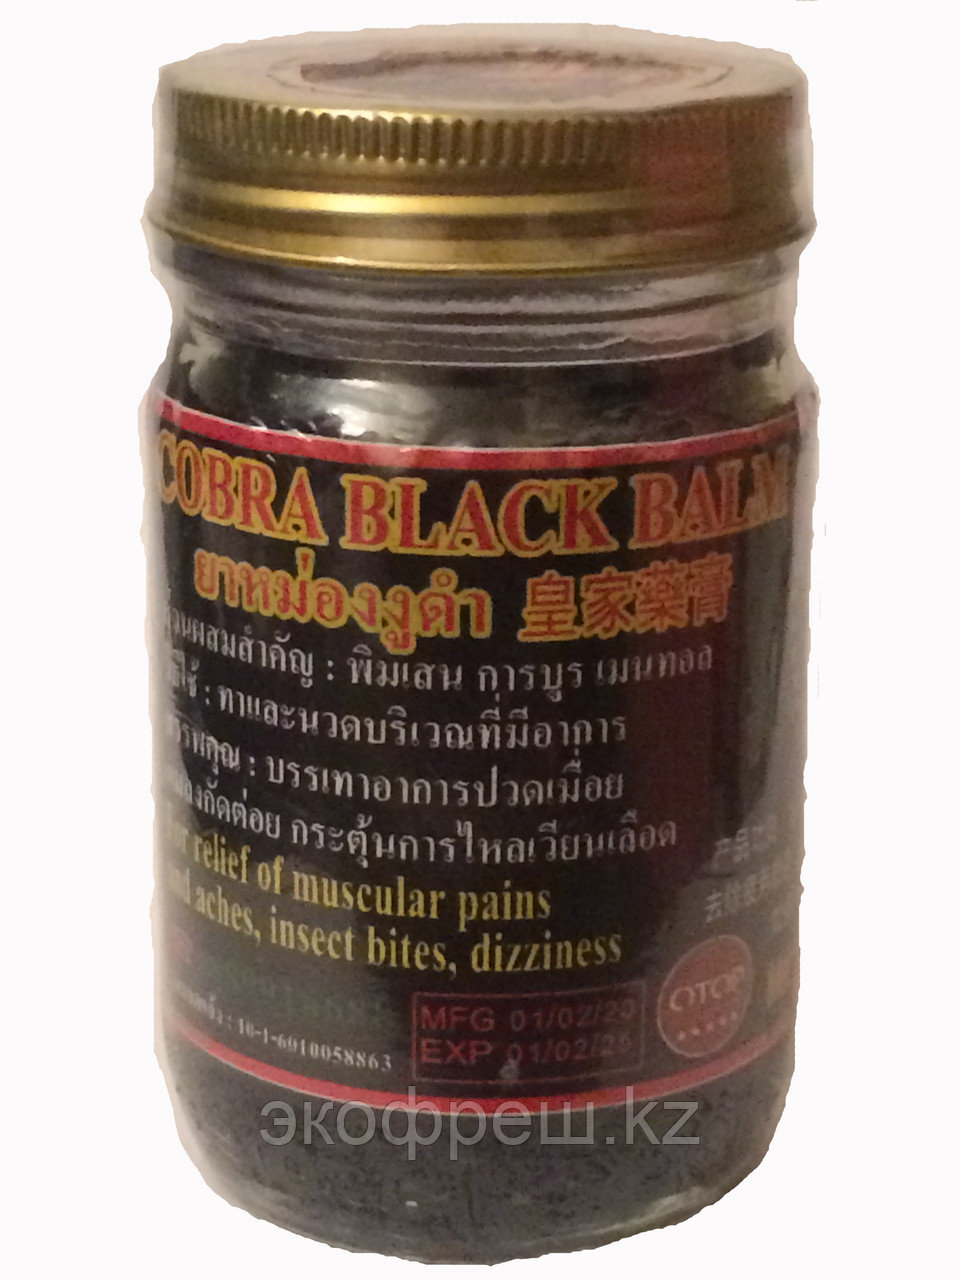 Тайский черный бальзам с коброй (Cobra Black Balm) 100 гр